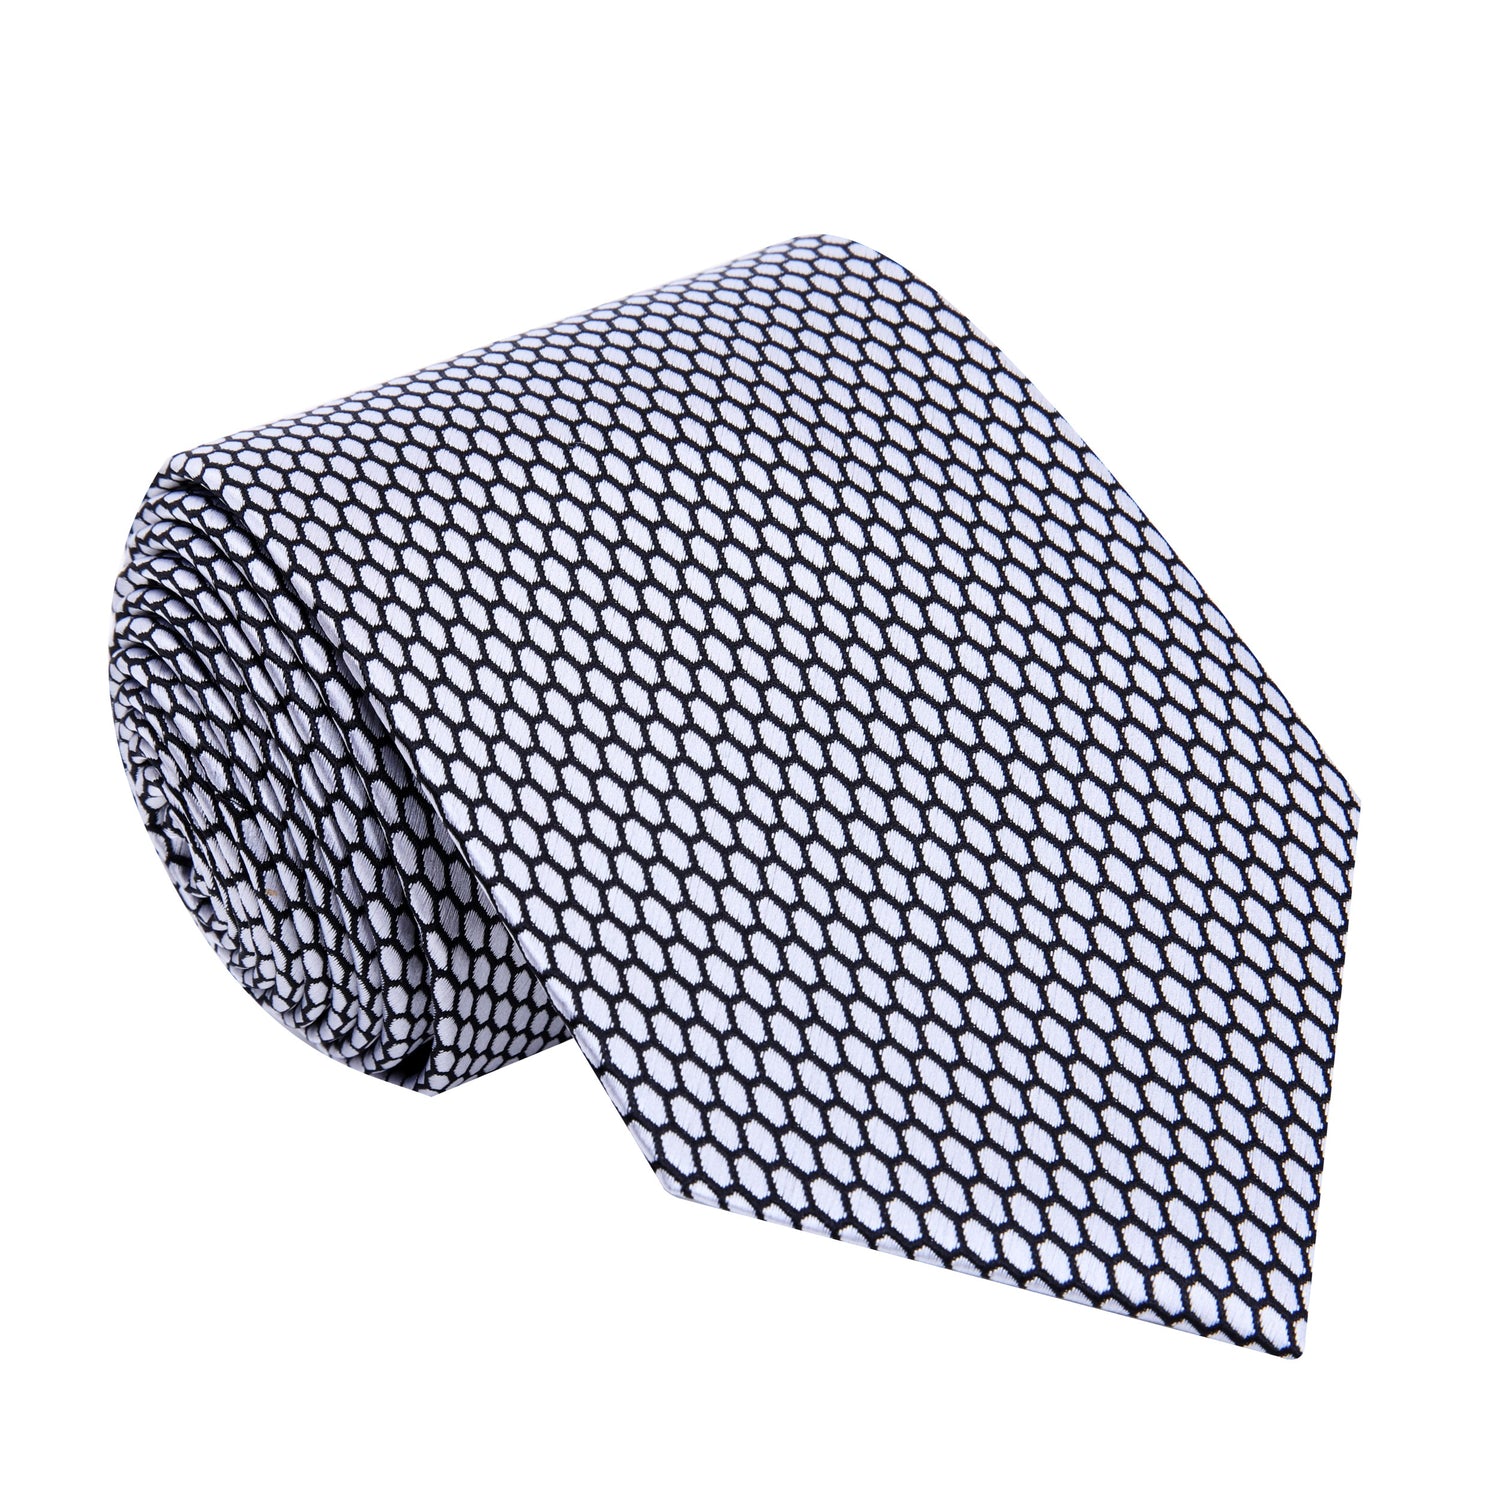 A Silver, Black Geometric Oval Shaped Pattern Silk Necktie 